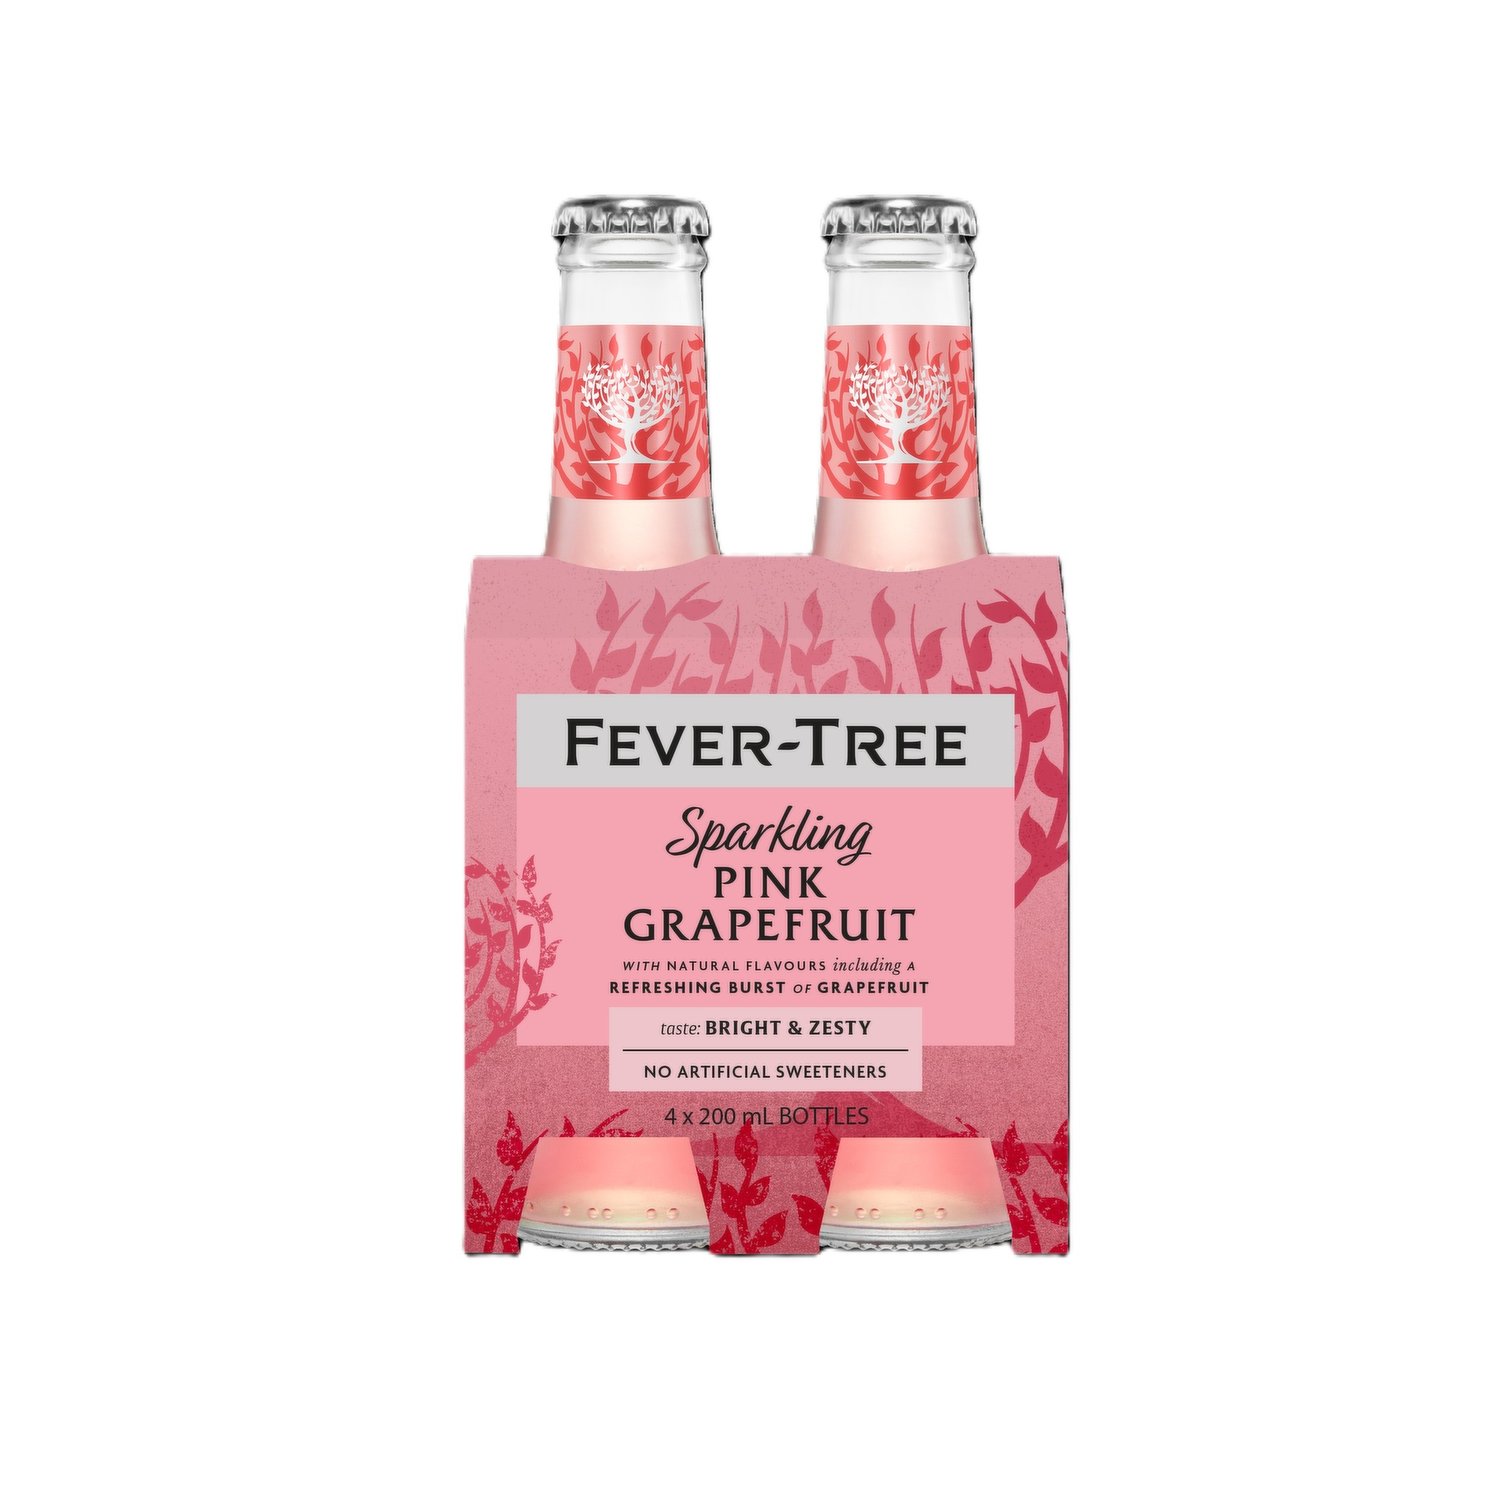 Fever-Tree - Sparkling Pink Grapefruit - Save-On-Foods